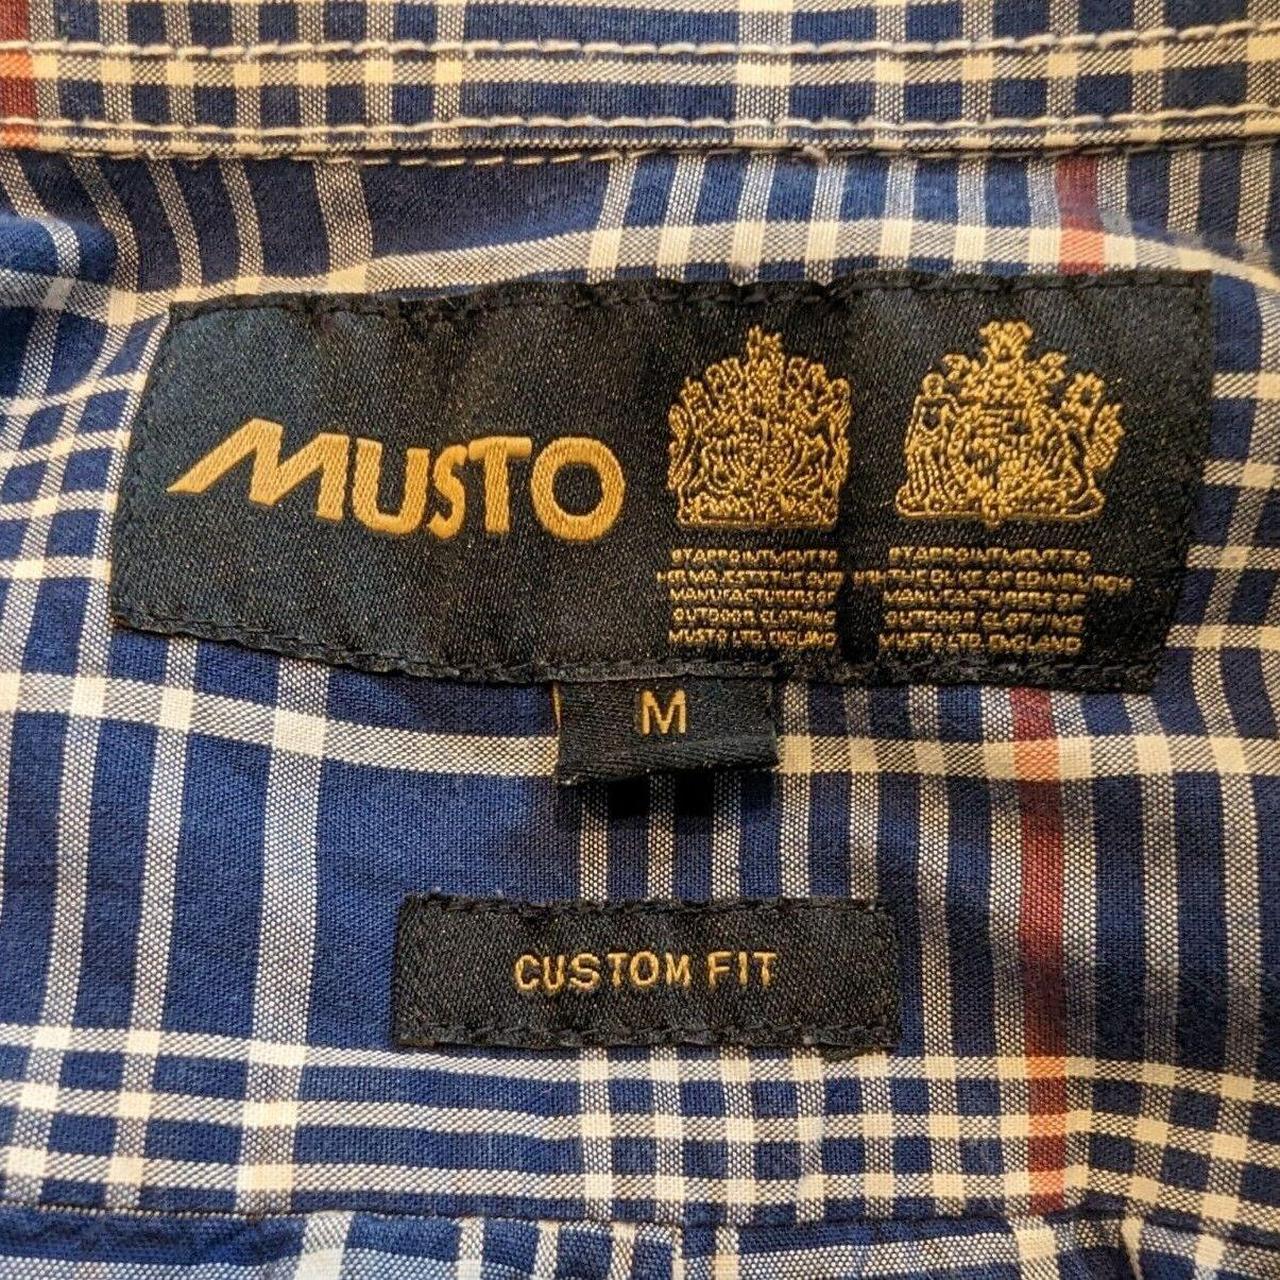 Musto Check Shirt Blue Red White Custom Fit Men's... - Depop